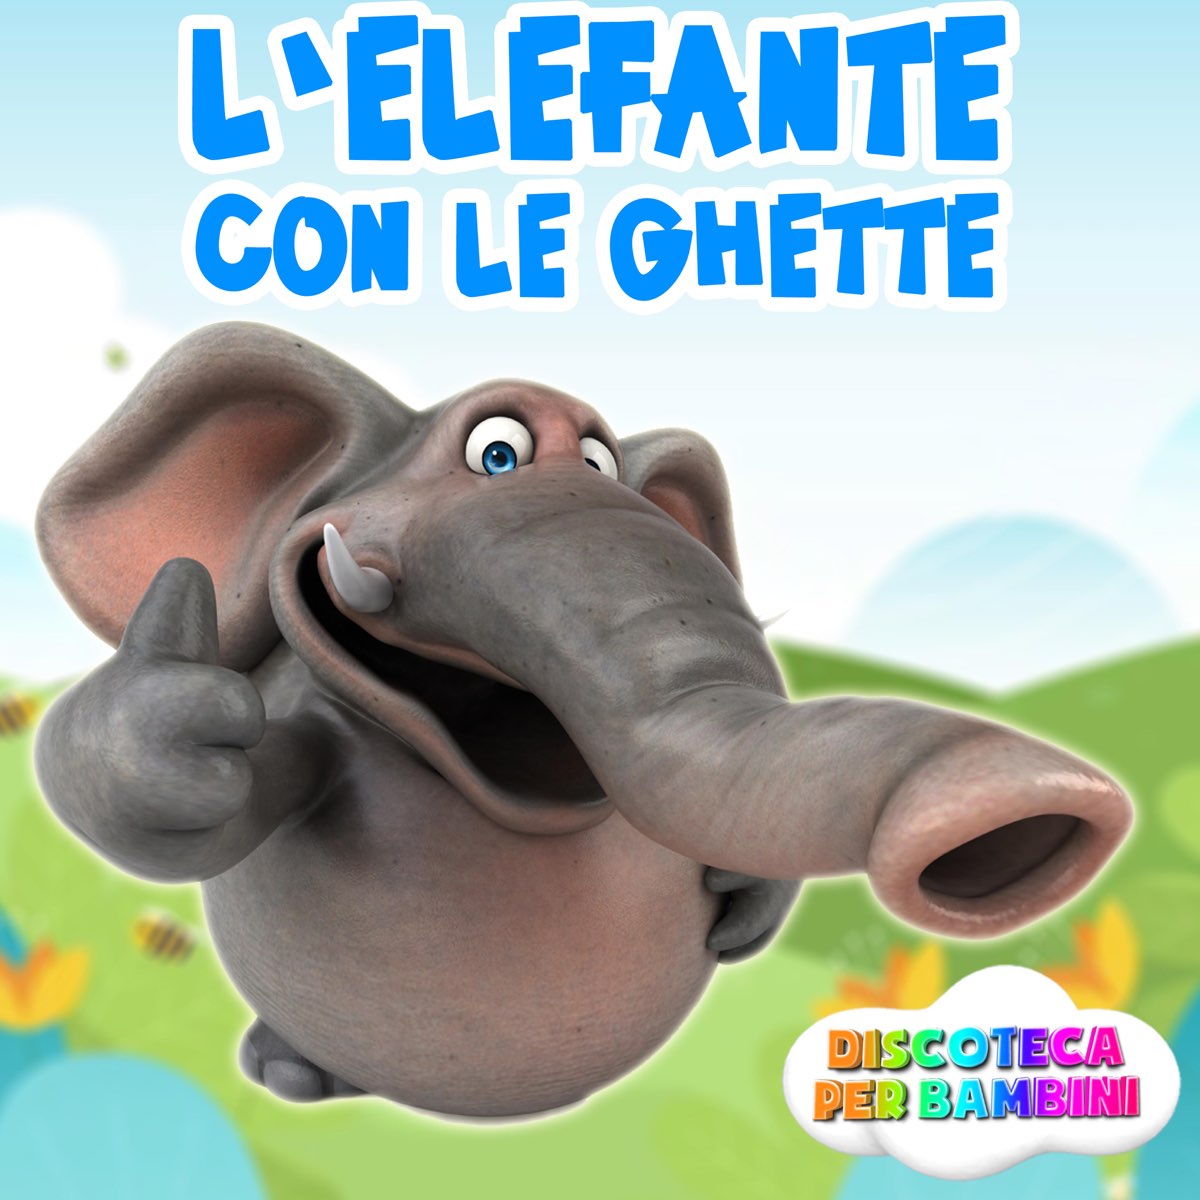 L'Elefante Con Le Ghette - Single by Discoteca Per Bambini on Apple Music